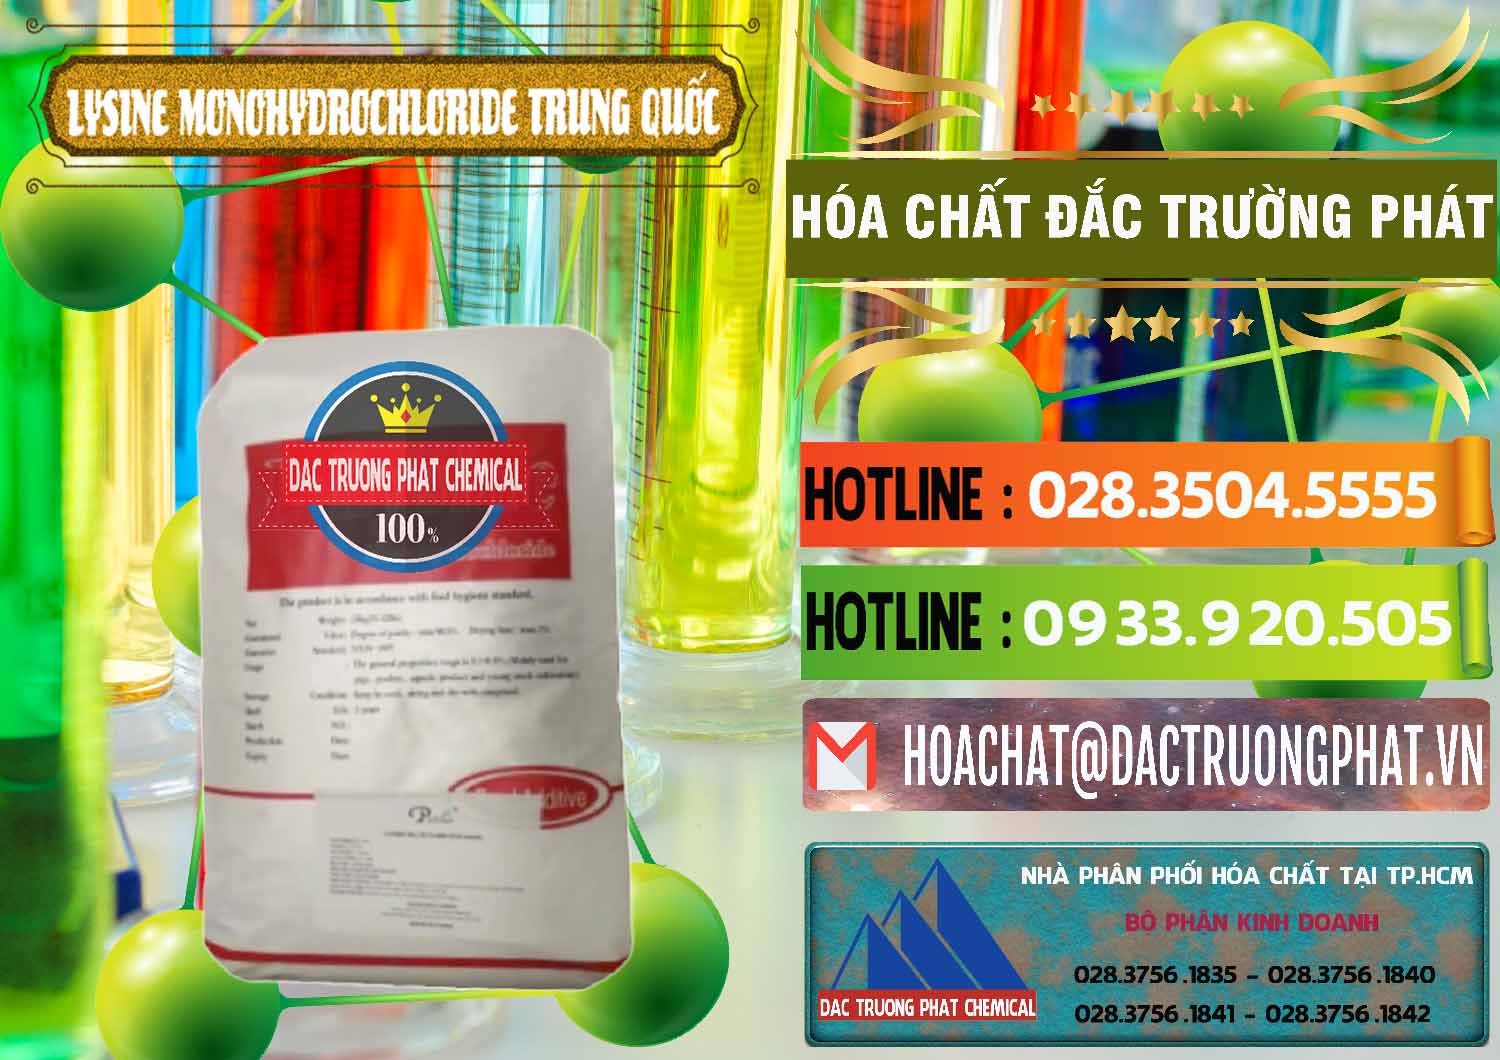 Cty bán ( cung cấp ) L-Lysine Monohydrochloride Feed Grade Trung Quốc China - 0454 - Đơn vị chuyên kinh doanh và cung cấp hóa chất tại TP.HCM - cungcaphoachat.com.vn